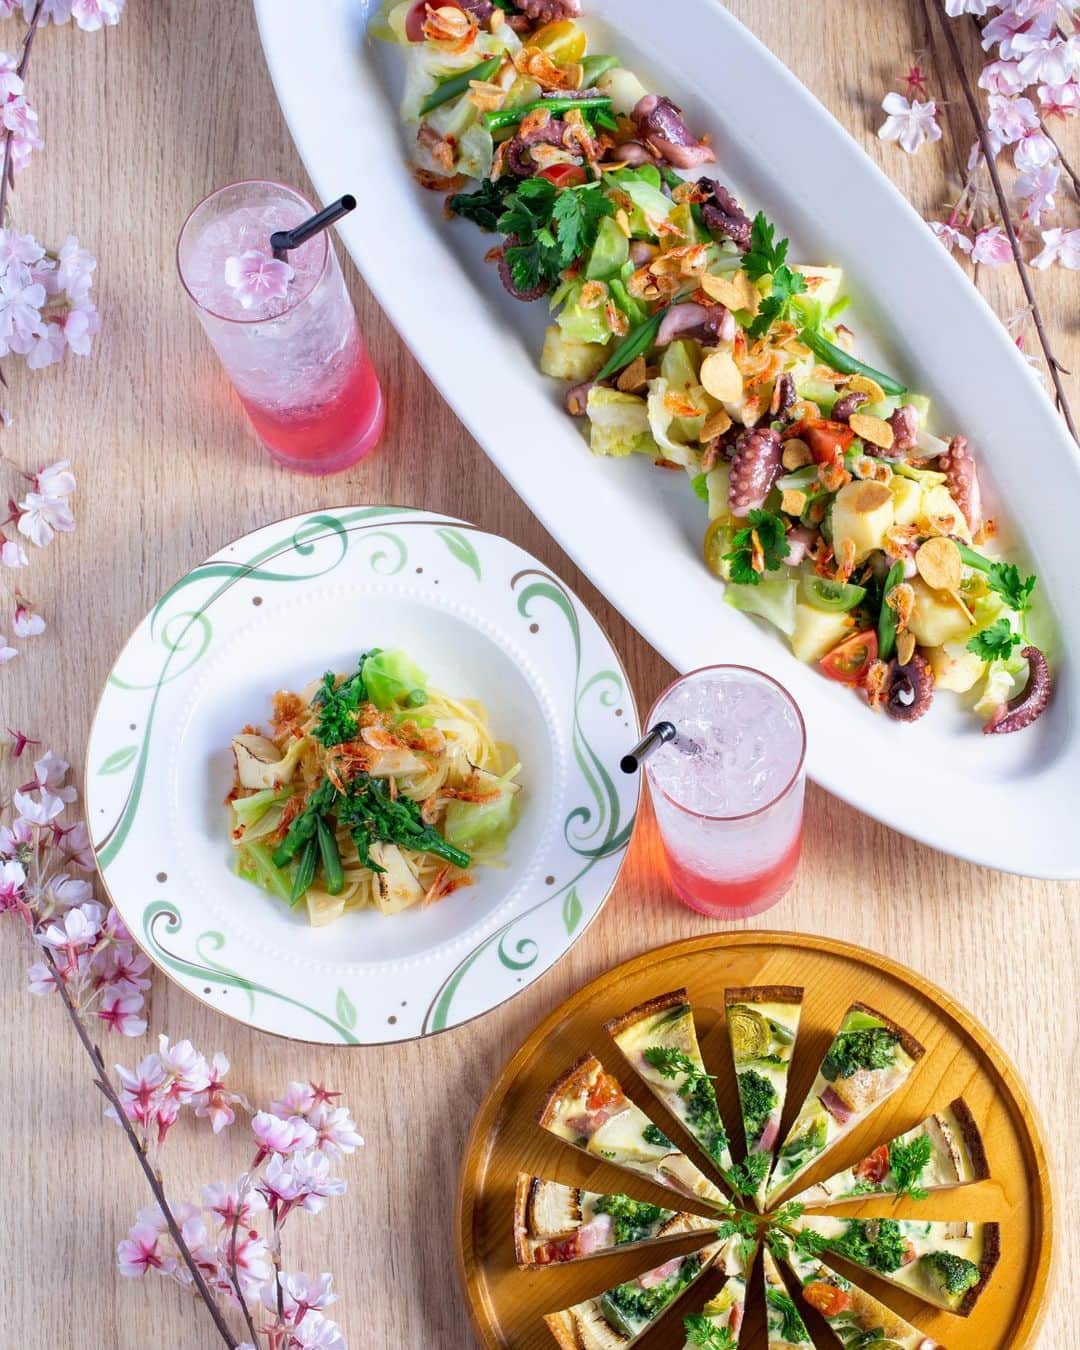 The Westin Osaka （ウェスティンホテル大阪）のインスタグラム：「レストラン「アマデウス」では、3/25～4/16限定でブッフェに桜海老と春野菜を使ったお料理が登場します🌸  平日限定のパスタセットは筍や菜の花、春キャベツなどの旬の春野菜と桜海老を使った“桜海老と春野菜パスタ”をご用意。 海の宝石ともいわれる風味抜群の桜海老がアクセントに🦐 また、ブッフェ台には華やかに彩る前菜やキッシュを。 春らしいこの時期だけの限定メニューをお楽しみください♪  お祝いのホールケーキ、乾杯のお飲み物がついた期間限定のプランもご用意しております。  🔗https://amadeus.westinosaka.com/ ご予約・お問い合わせはレストラン「アマデウス」まで TEL.06-6440-1062 ————————————————— #ビストロ #bistro #アマデウス #桜 #桜海老 #桜えび #春野菜 #キッシュ #パスタランチ #ランチブッフェ #ホテルブッフェ #バイキング #ブッフェ #ビュッフェ #大淀ランチ #女子会 ———————————————— Tag @westinosaka to share your image with us. ⠀⠀ #WestinOsaka #ウェスティンホテル大阪」